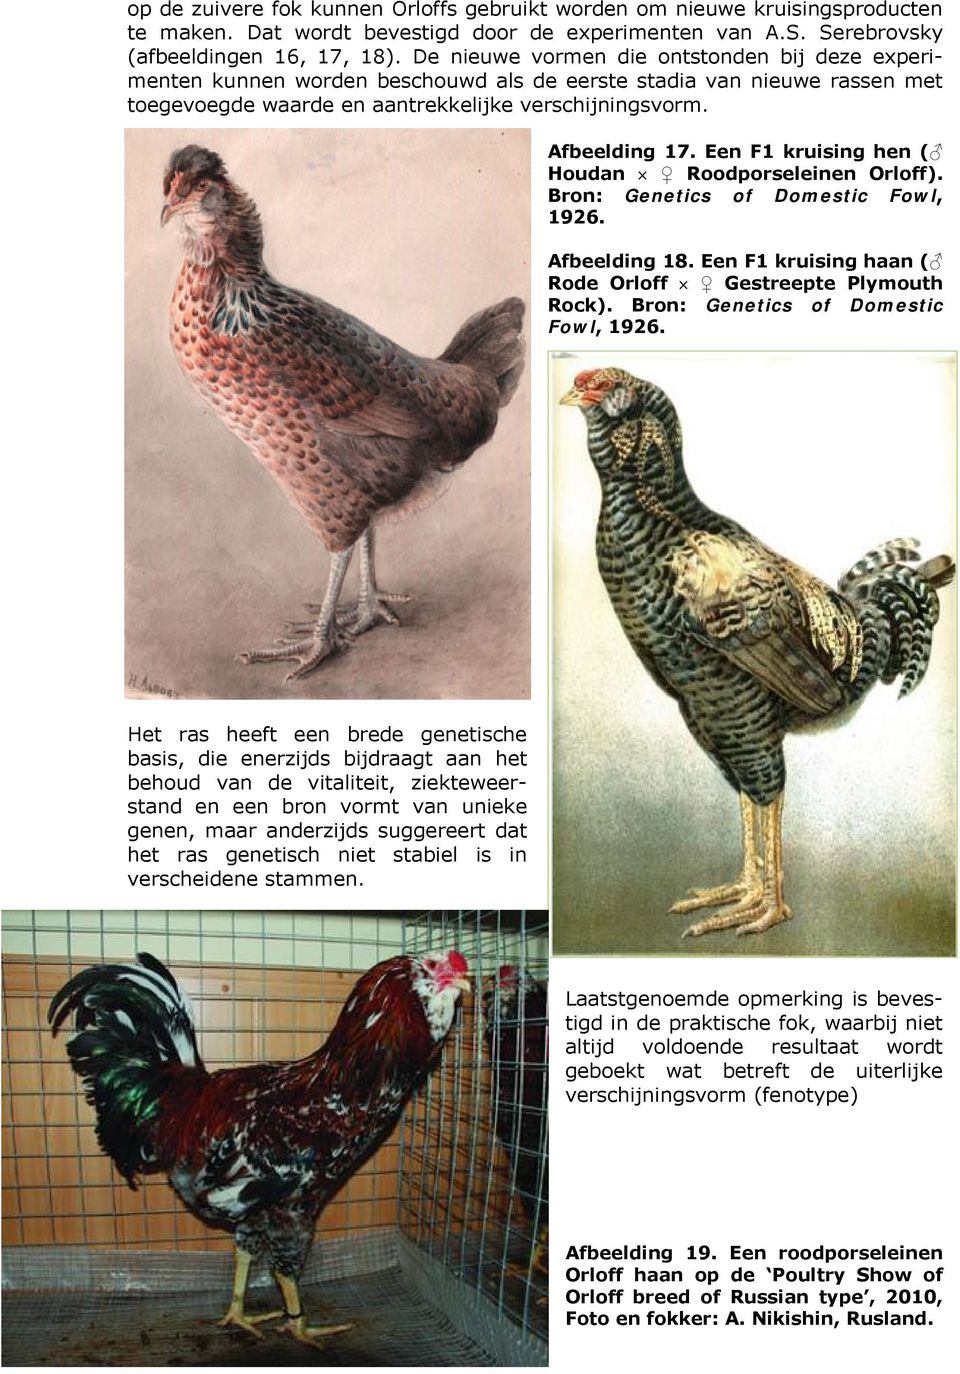 Een F1 kruising hen ( Houdan Roodporseleinen Orloff). Bron: Genetics of Domestic Fowl, 1926. Afbeelding 18. Een F1 kruising haan ( Rode Orloff Gestreepte Plymouth Rock).